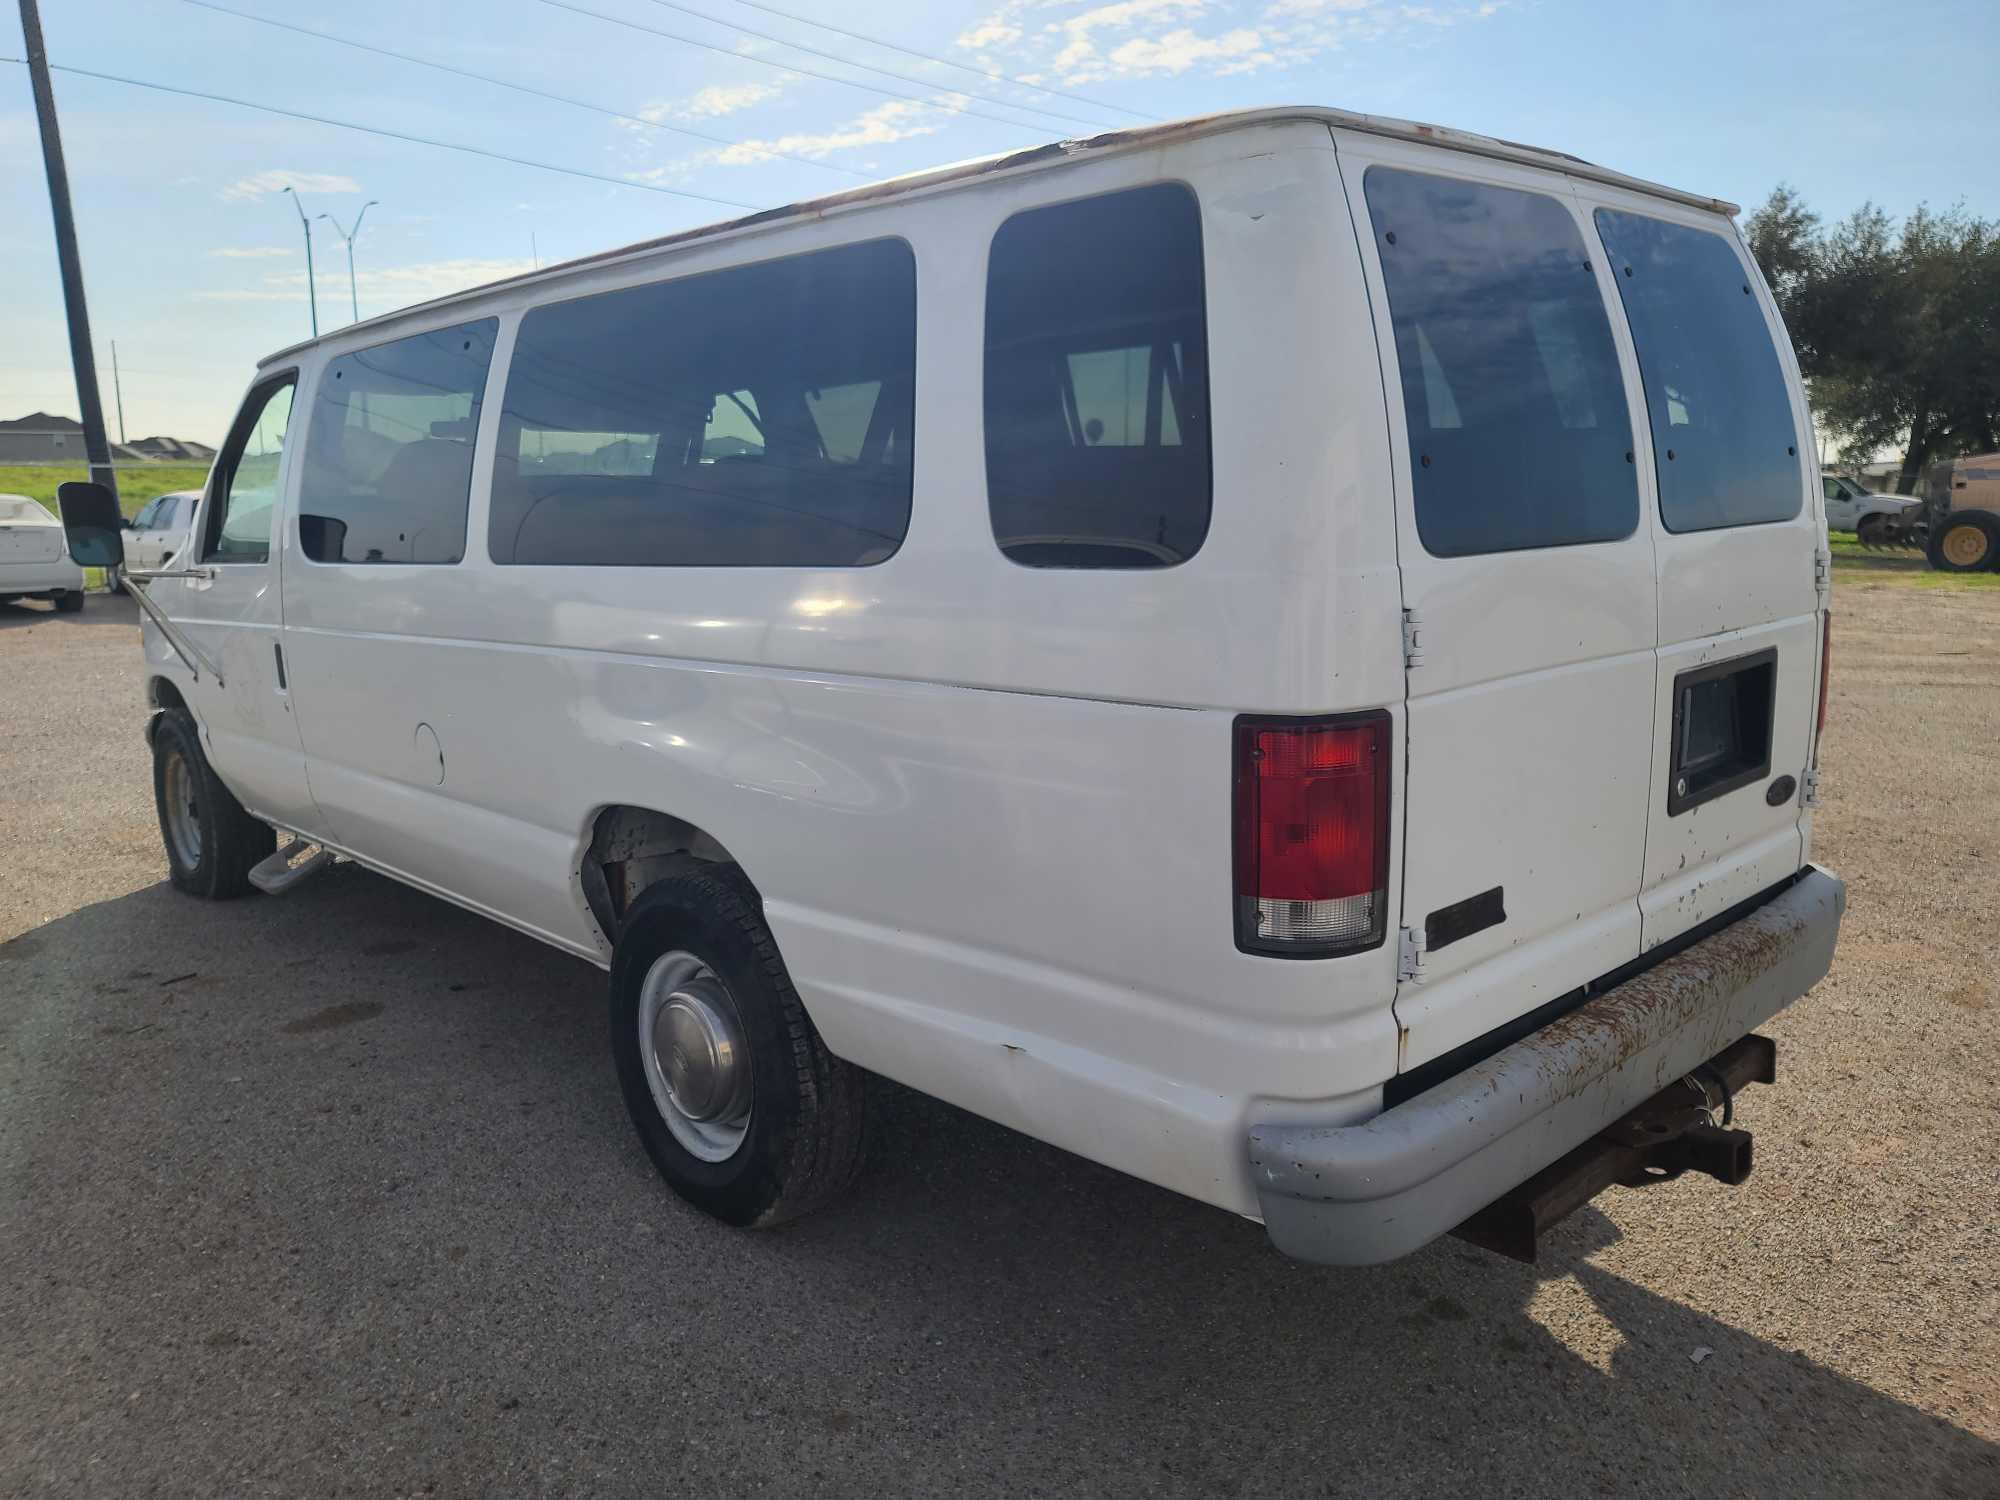 2000 Ford Econoline Wagon Van, VIN # 1FBSS31L1YHA14729